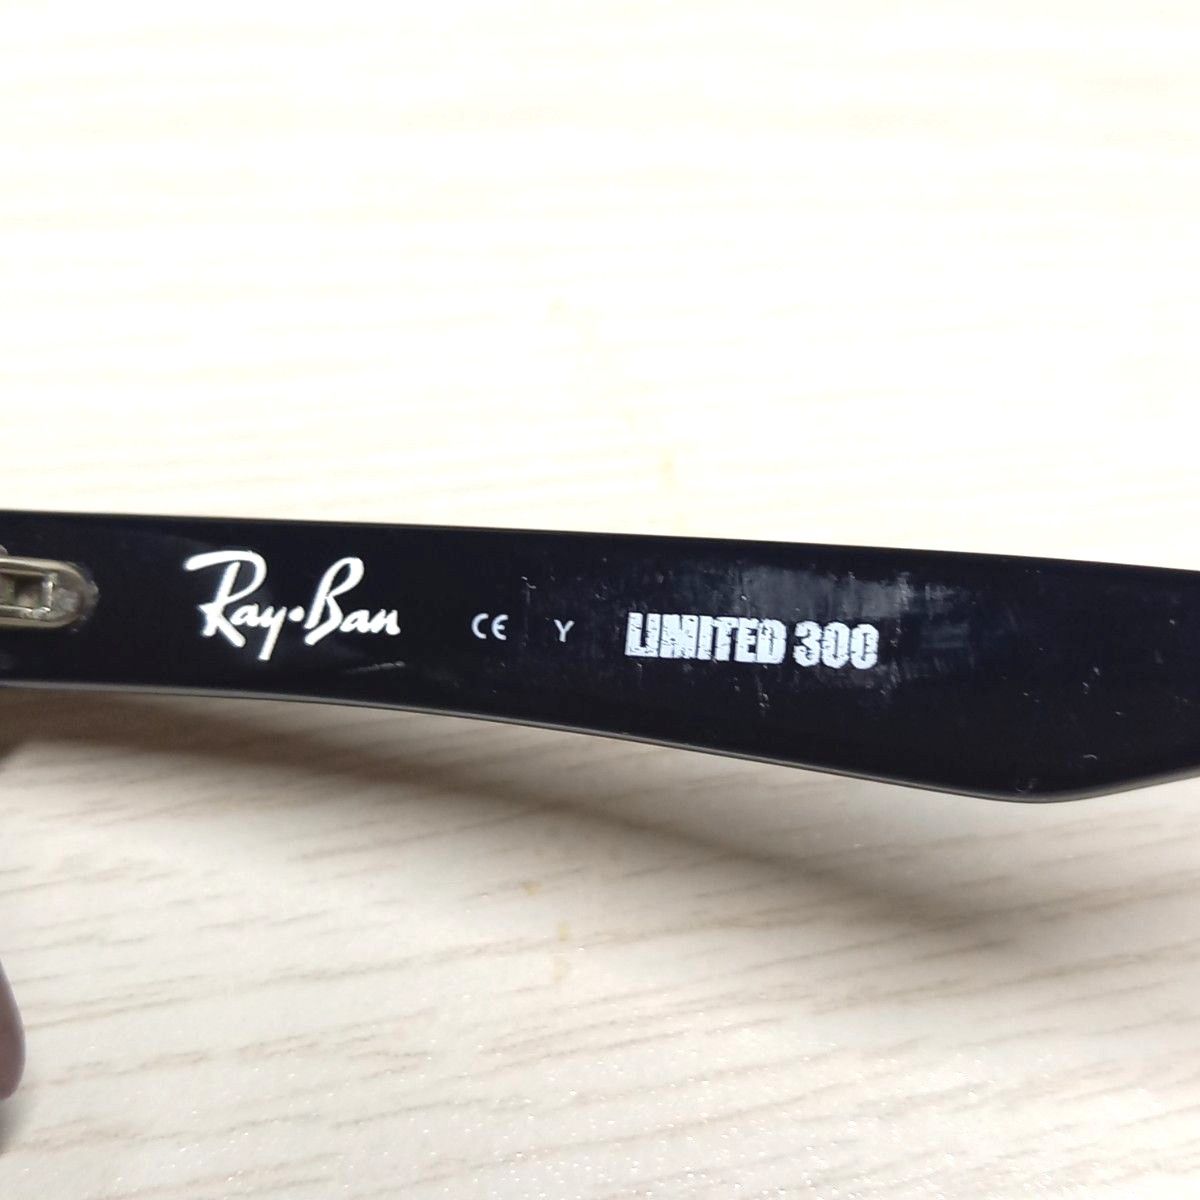 レア Ray Ban レイバン RB5130 LIMITED300 限定モデル サングラス ブラック×ボルドー 希少